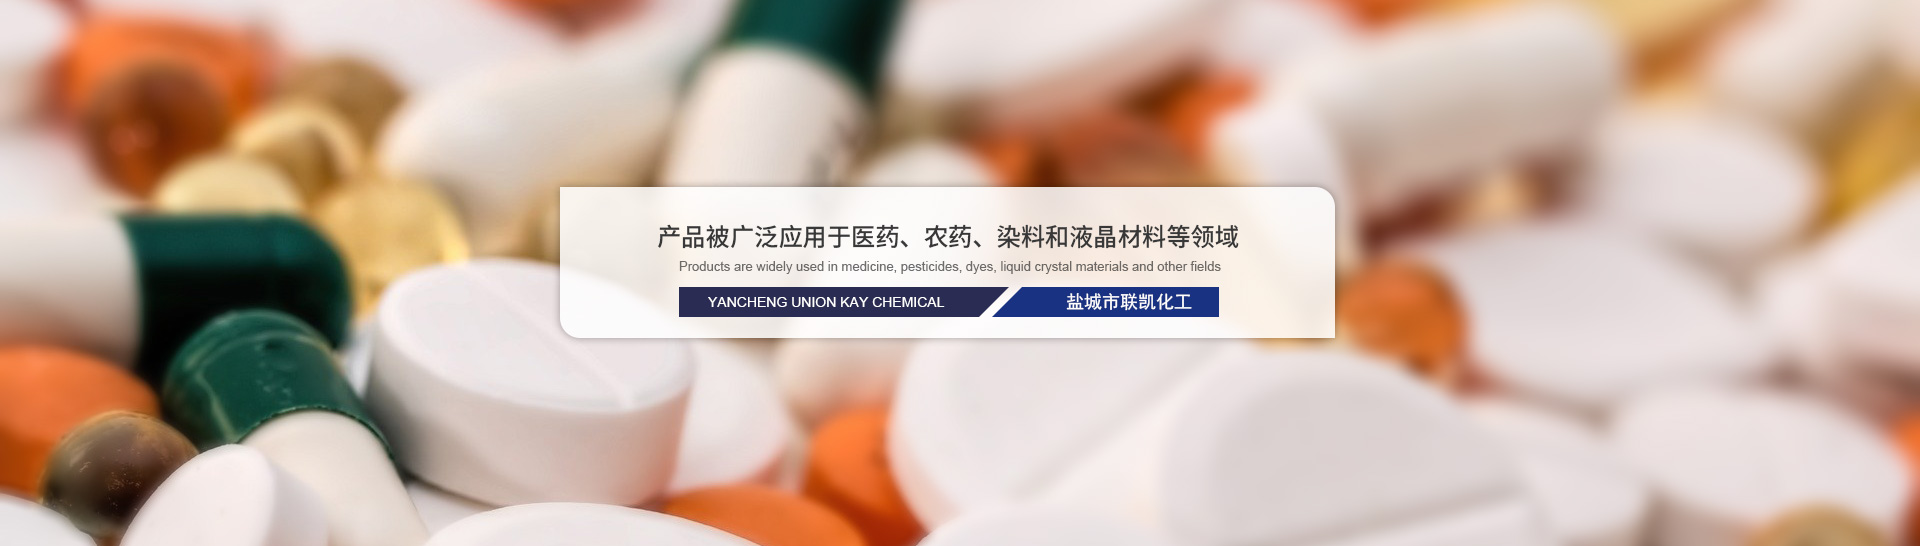 Xuzhou JianPing Chemical Co., Ltd.